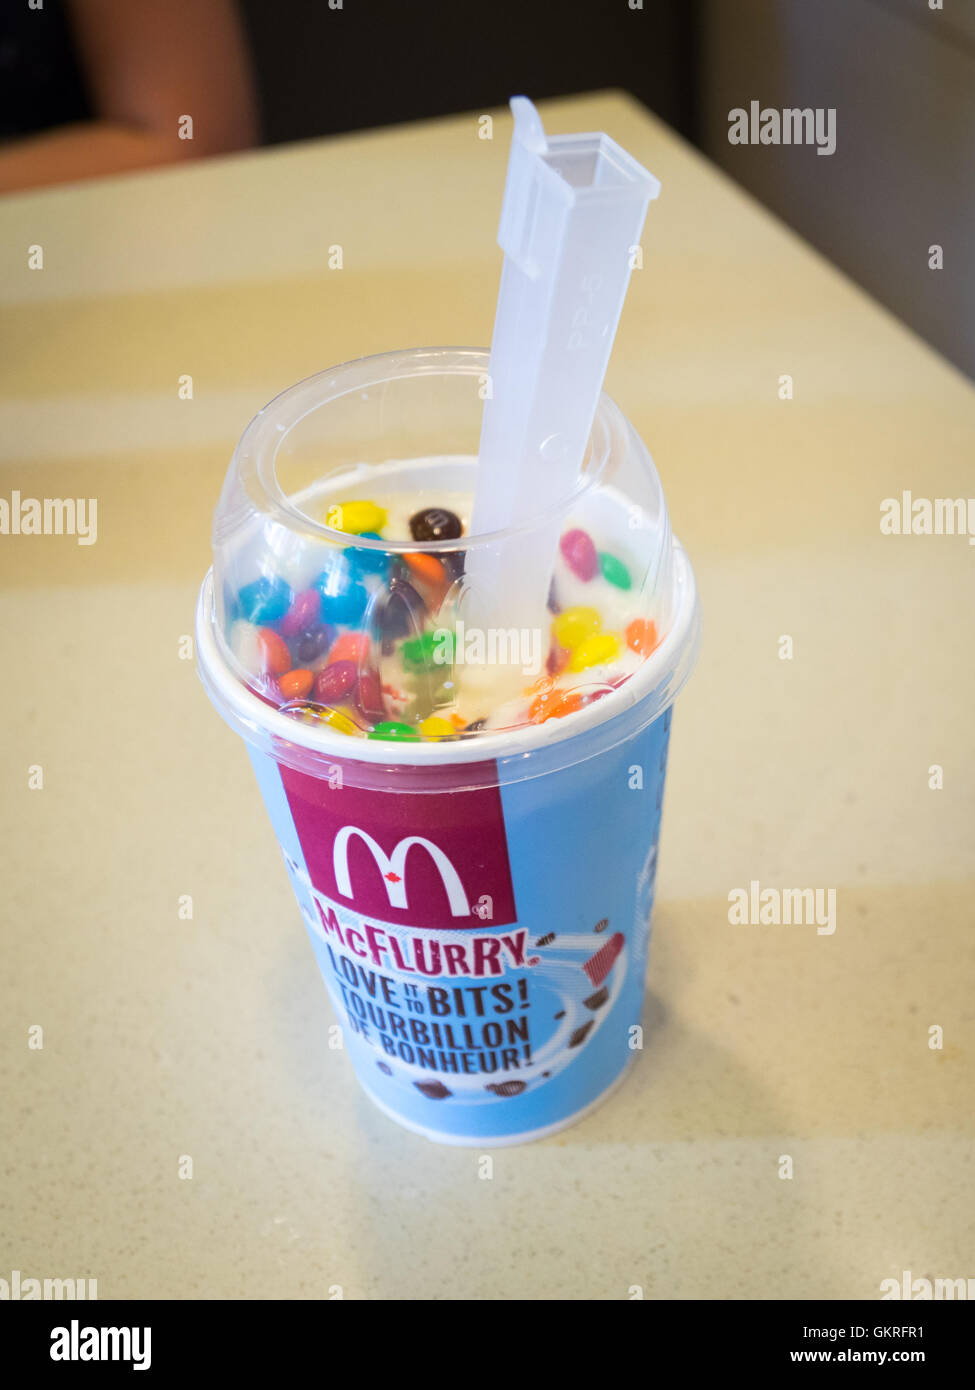 Ein M & M' McFlurry, Soft-dienen Eis Dessert von McDonald's. Stockfoto